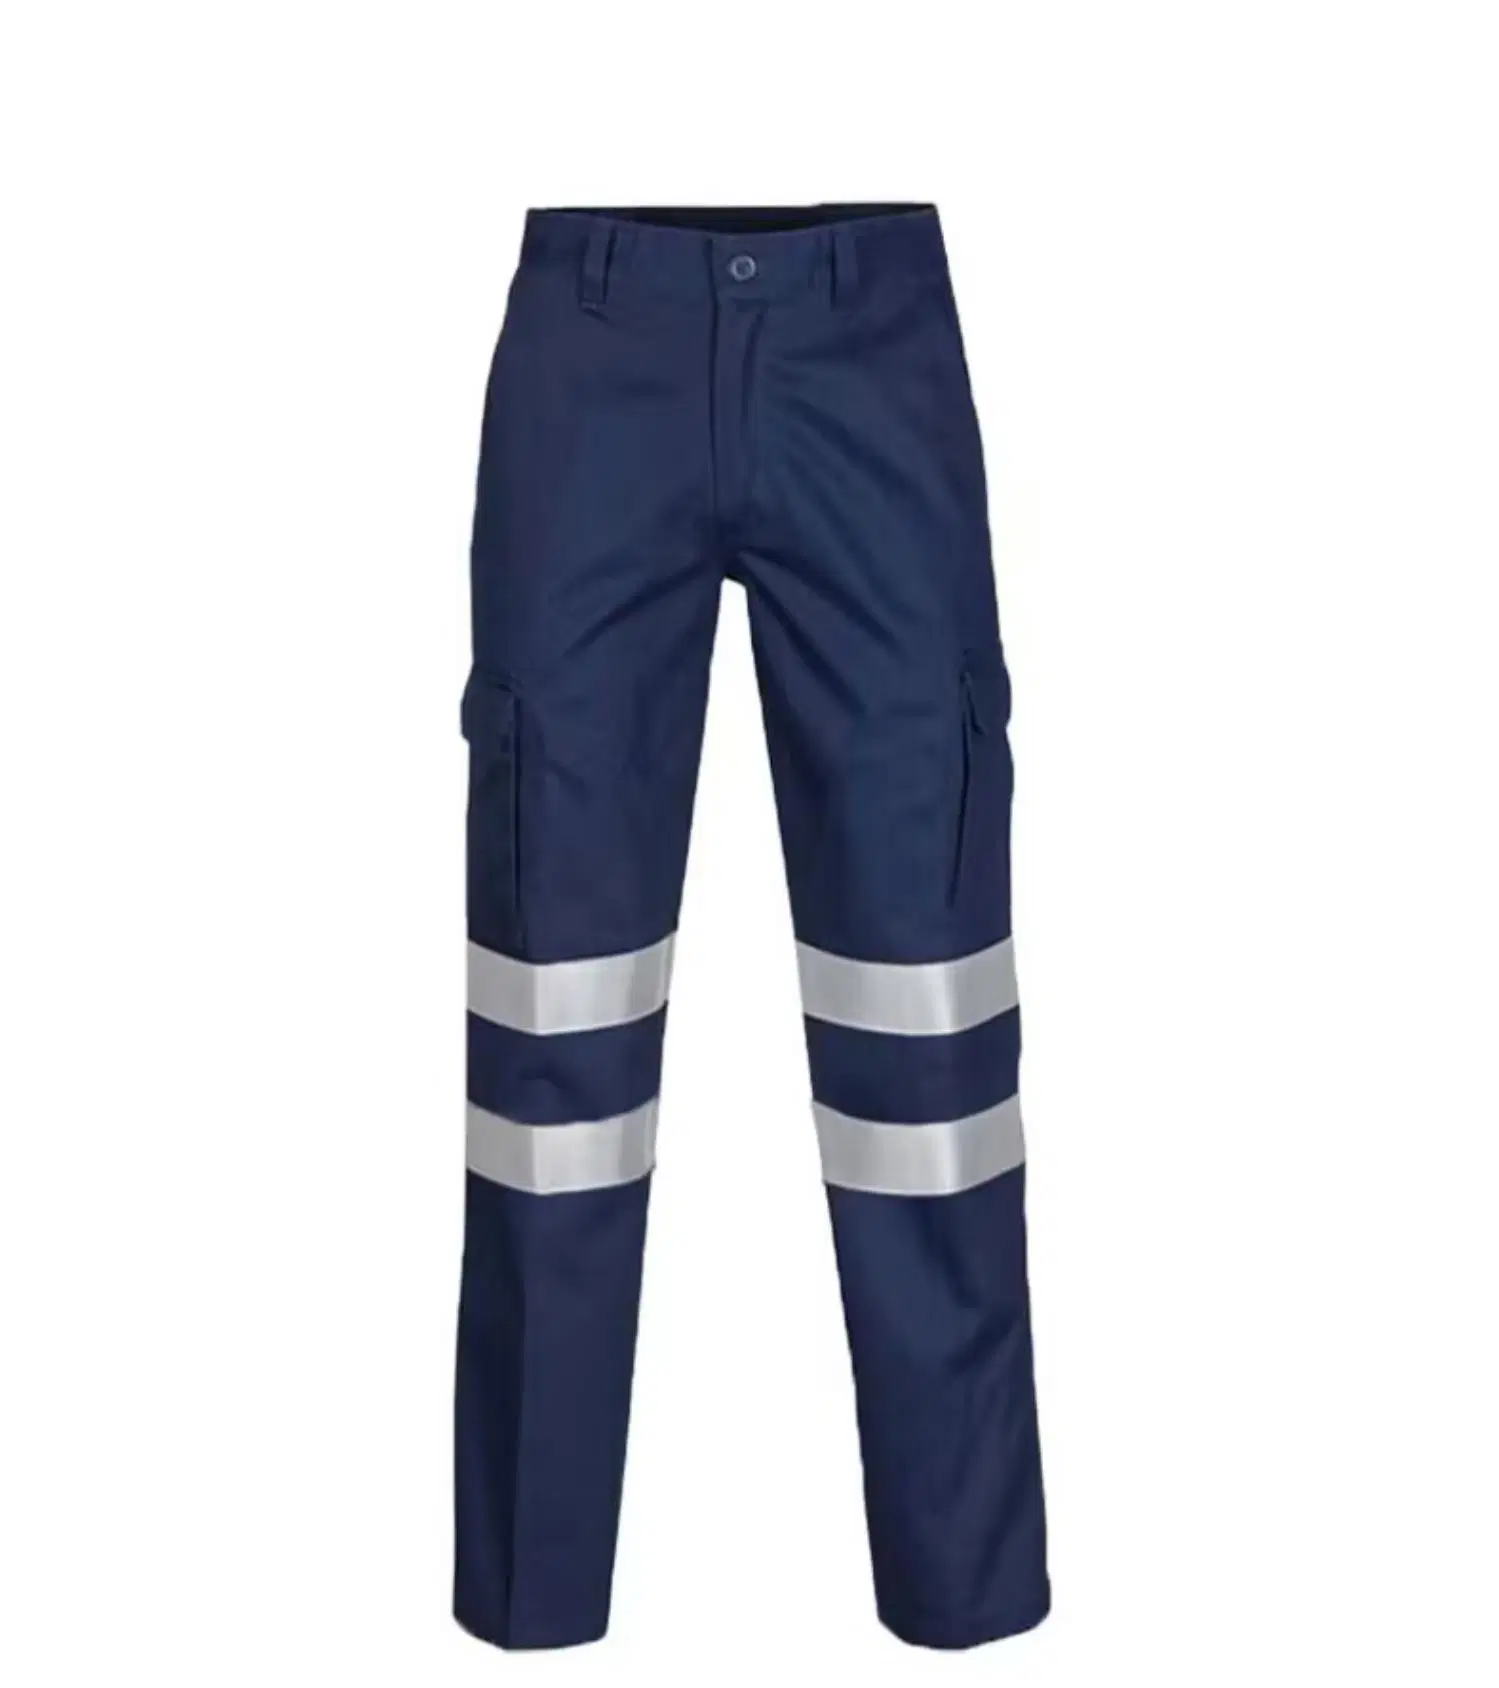 Men Cotton Hi-Vis Reflective Work Uniform Pants